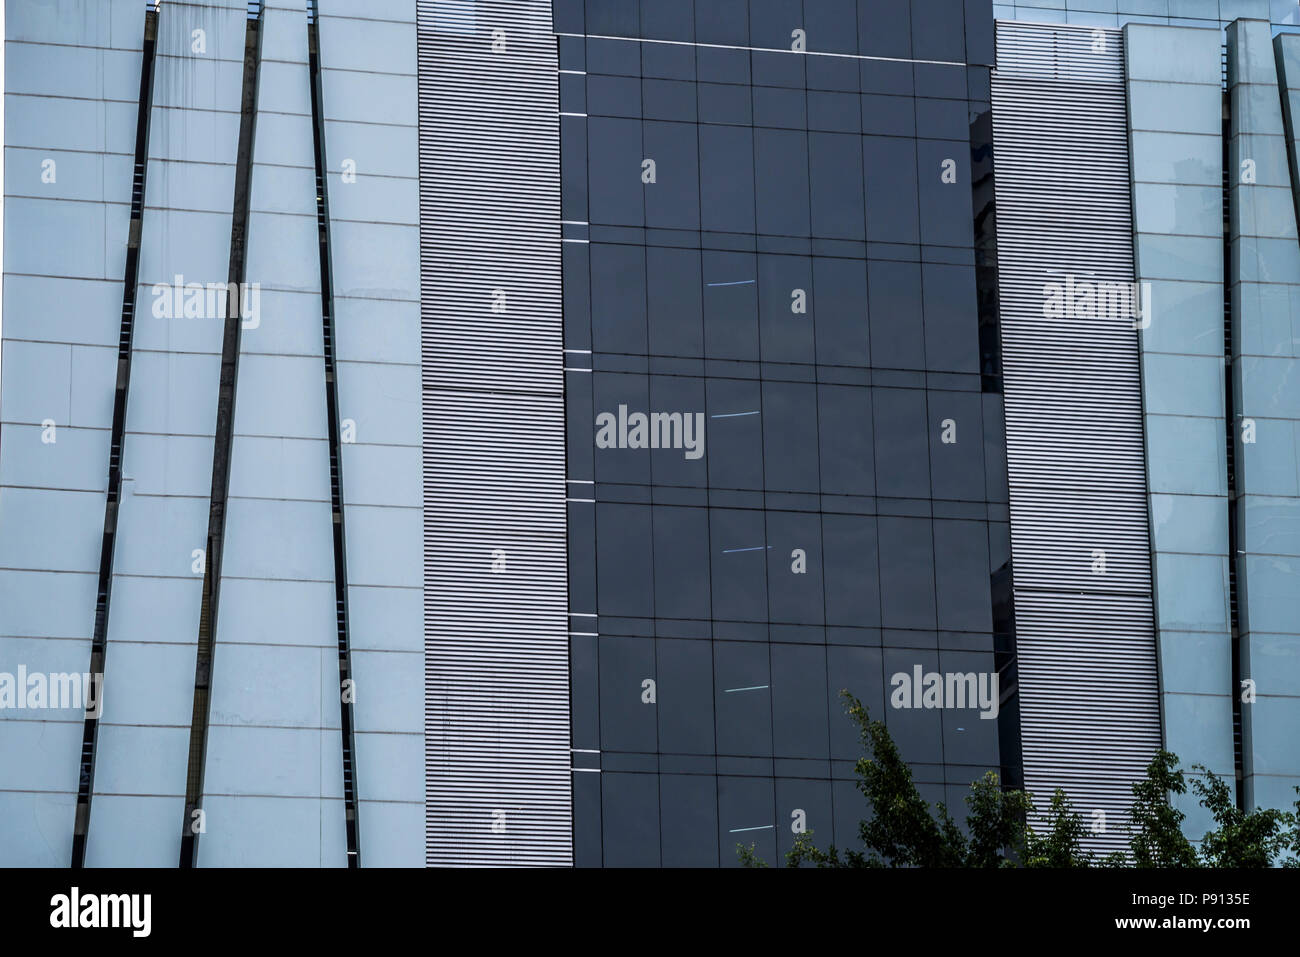 Gratte-ciel moderne immeuble de bureaux commerciaux à la façade de verre Détails Gros plan Banque D'Images